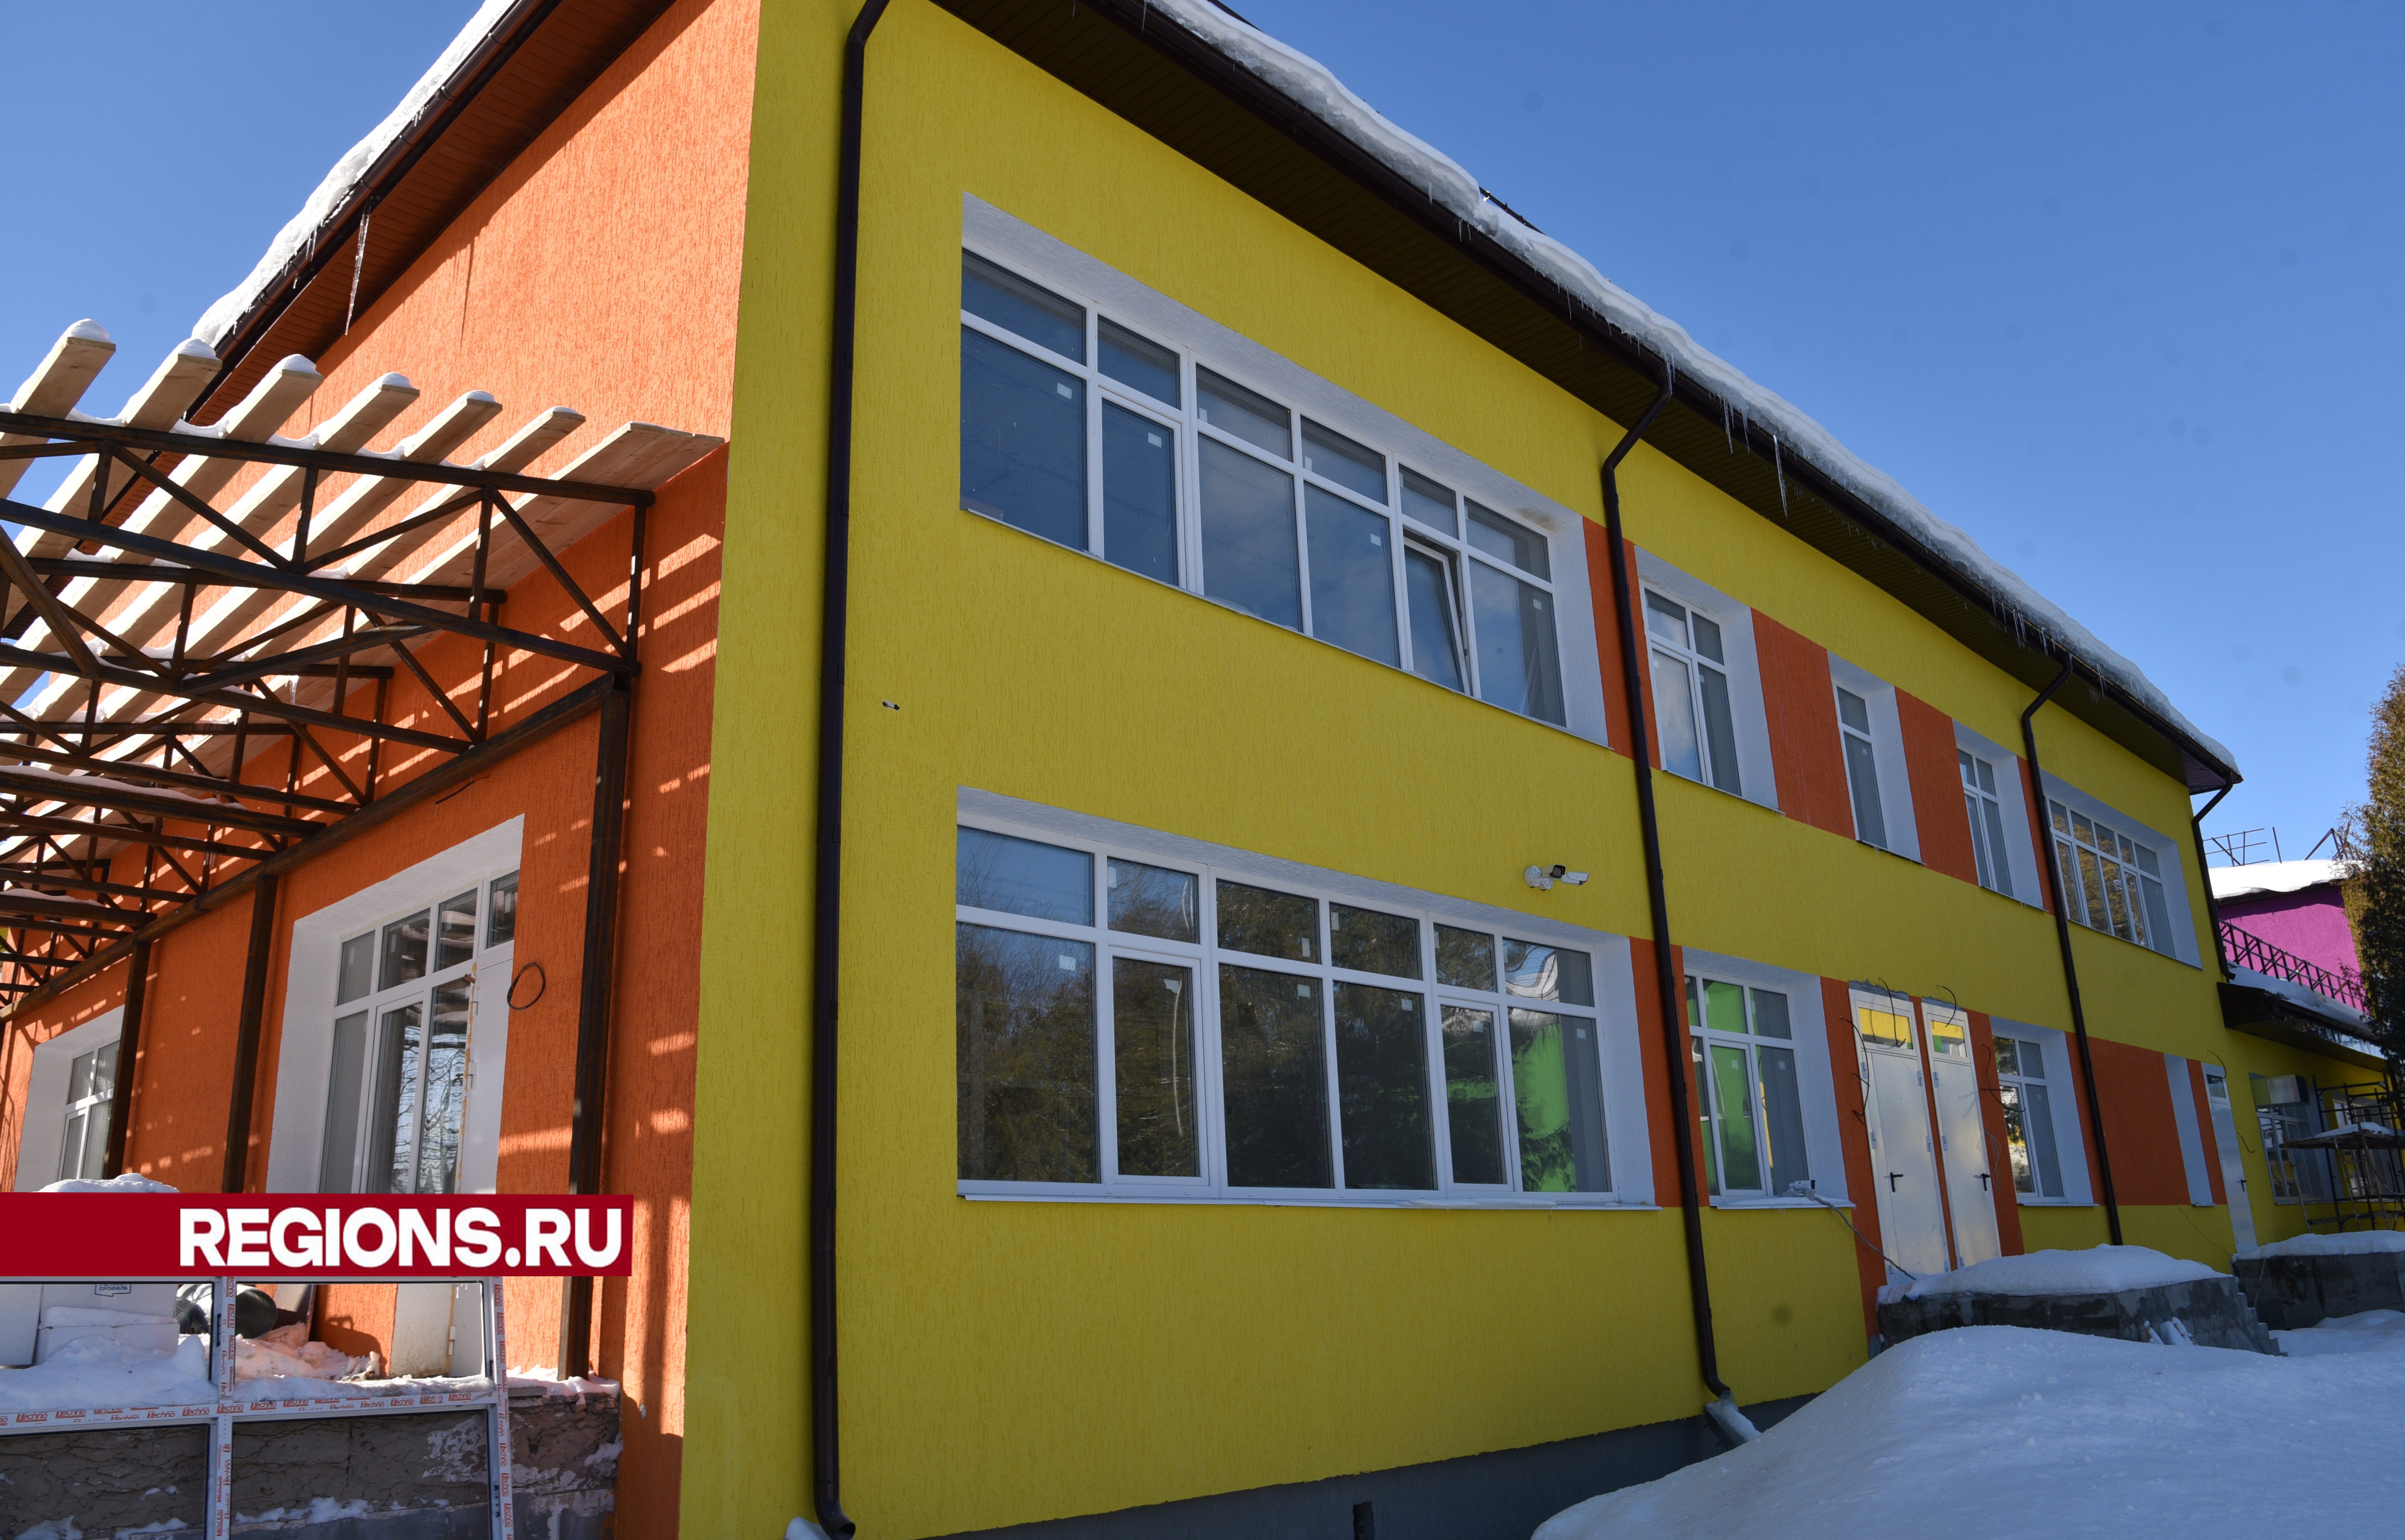 Жители Лотошино получат отремонтированный детский сад «Мечта» уже в мае